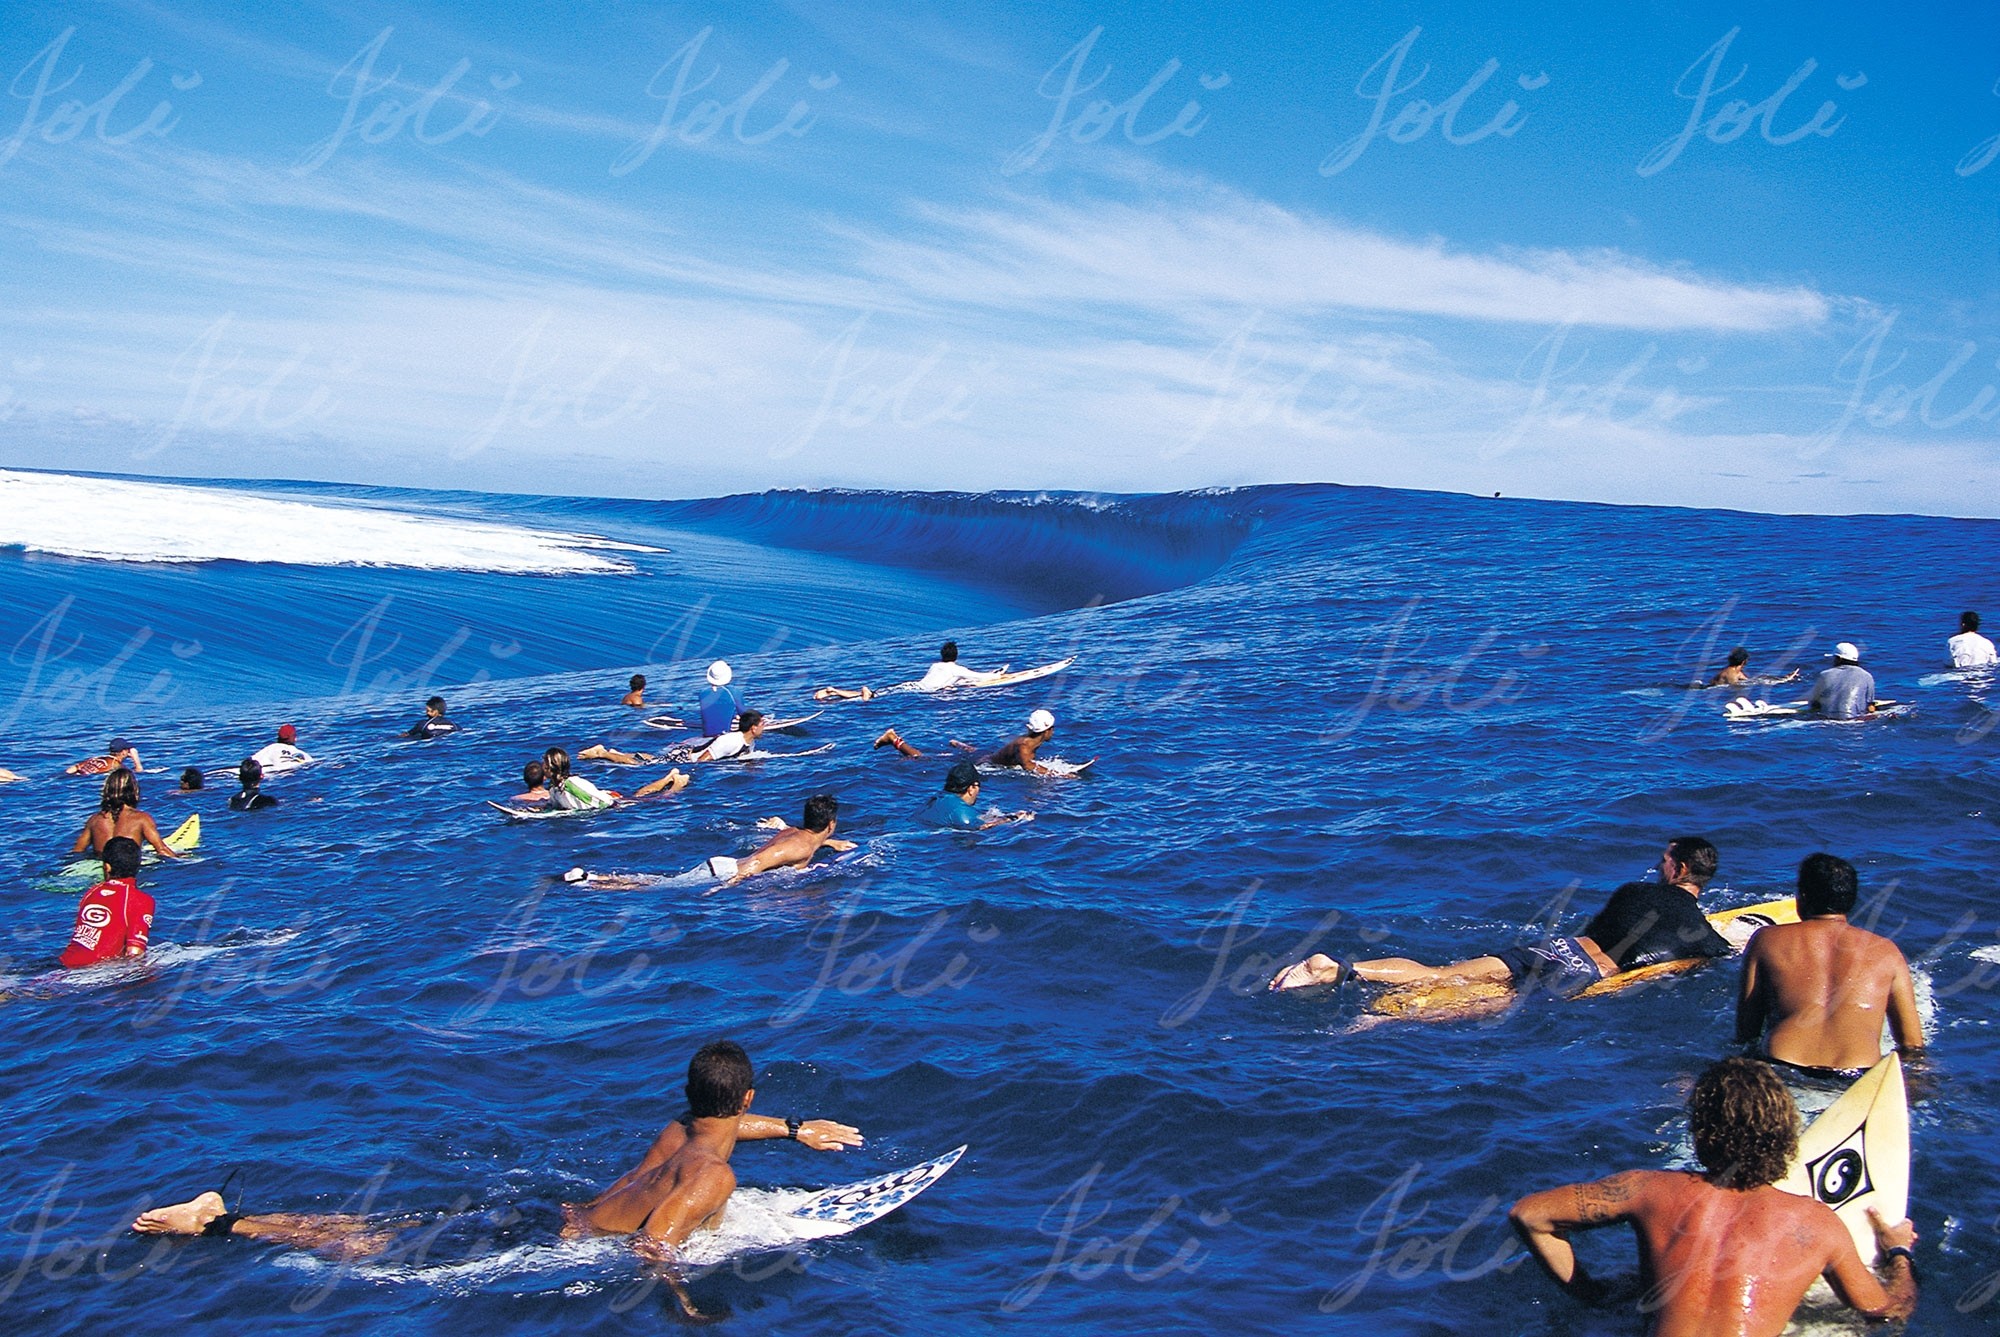 2000x1337 Reef Draining Joli TK1650, Teahupoo, Tahiti. $110 image usage fee - Custom  Wallpaper